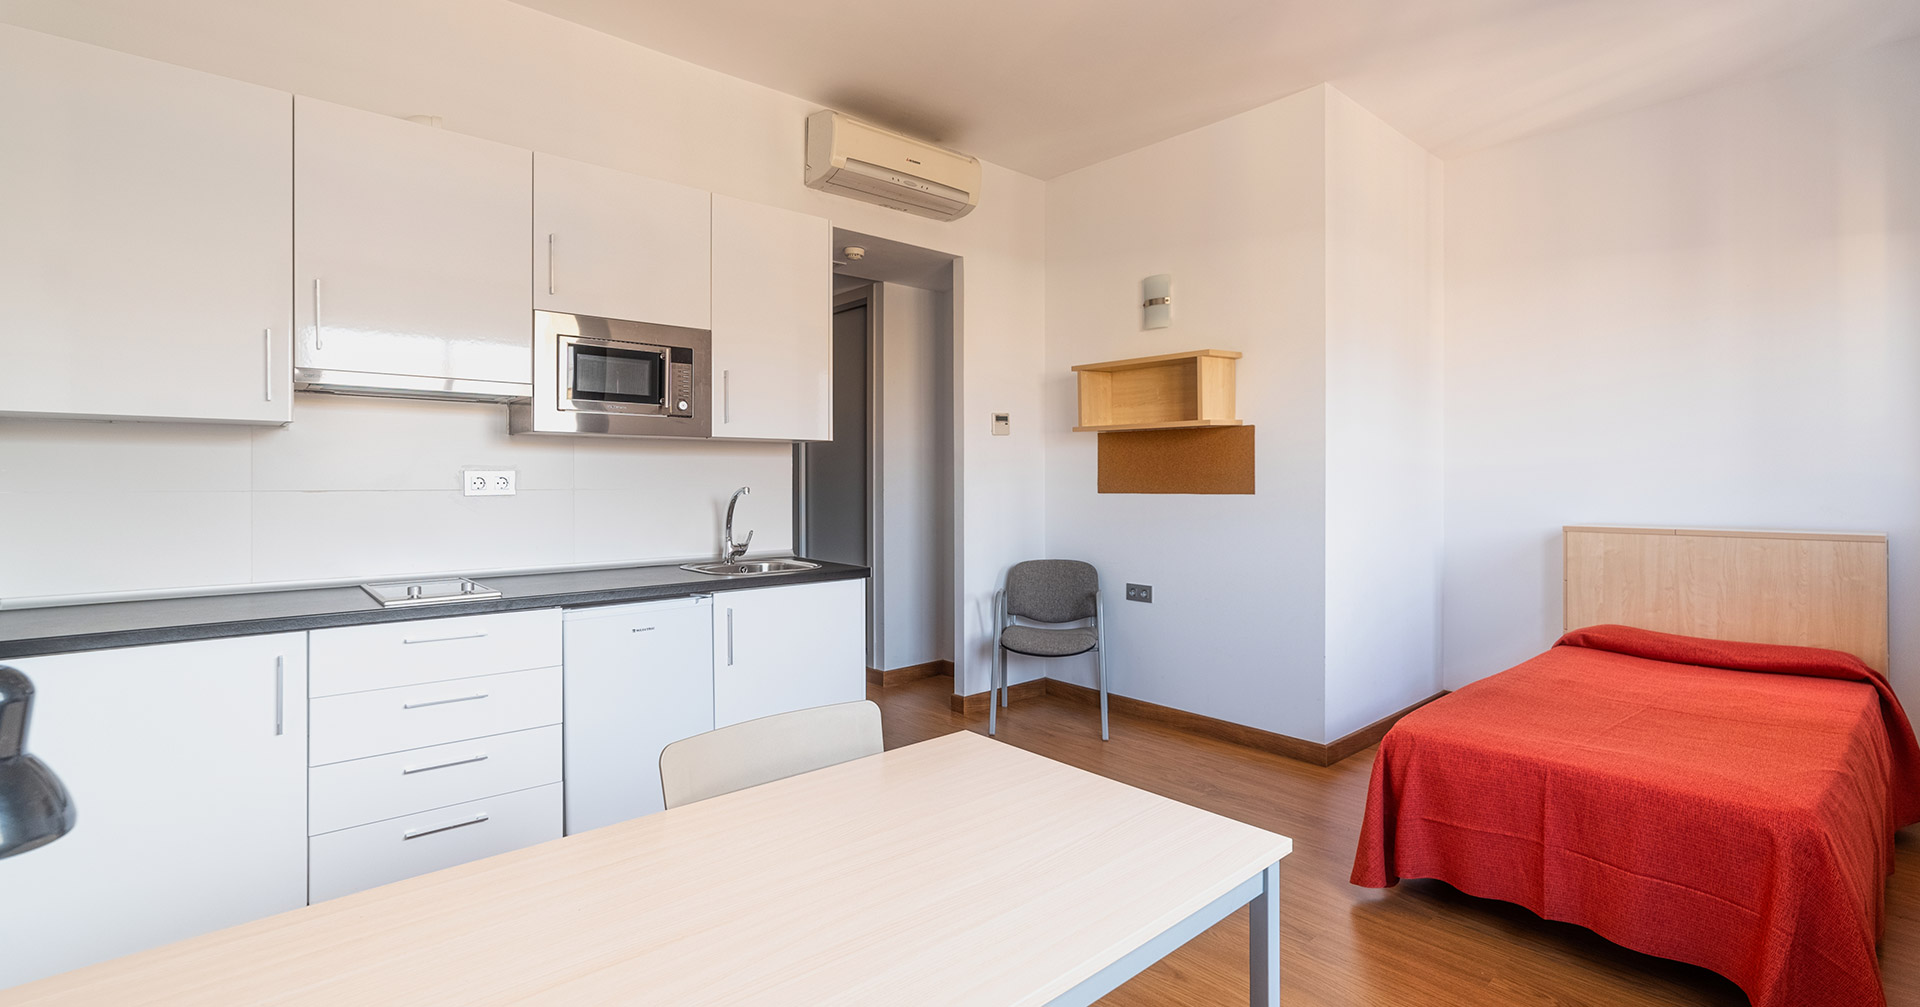 habitacion-individual-con-cocina-residencia-unversitaria-civitas